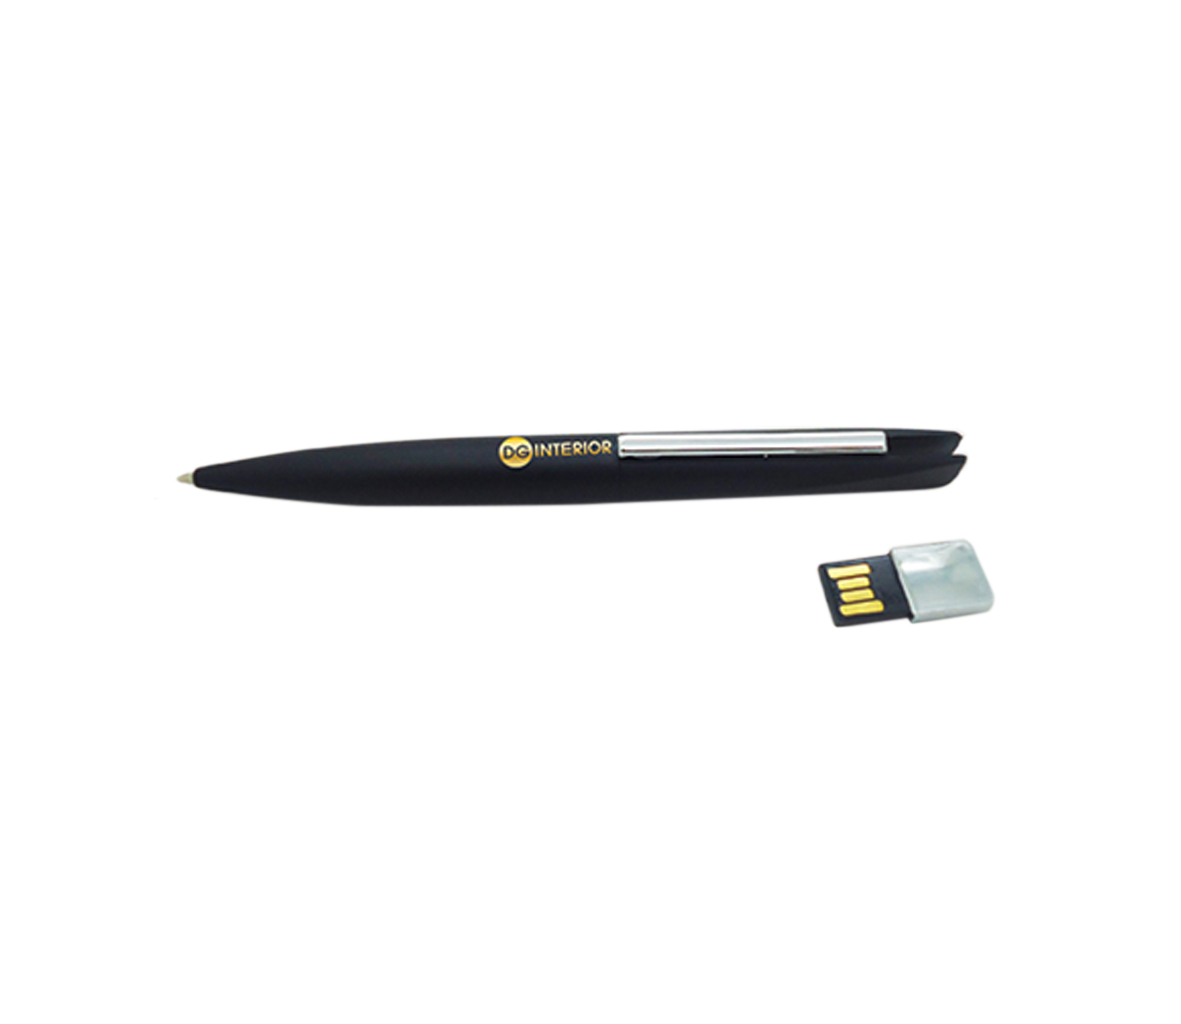 USB kim loại dạng bút mẫu 04